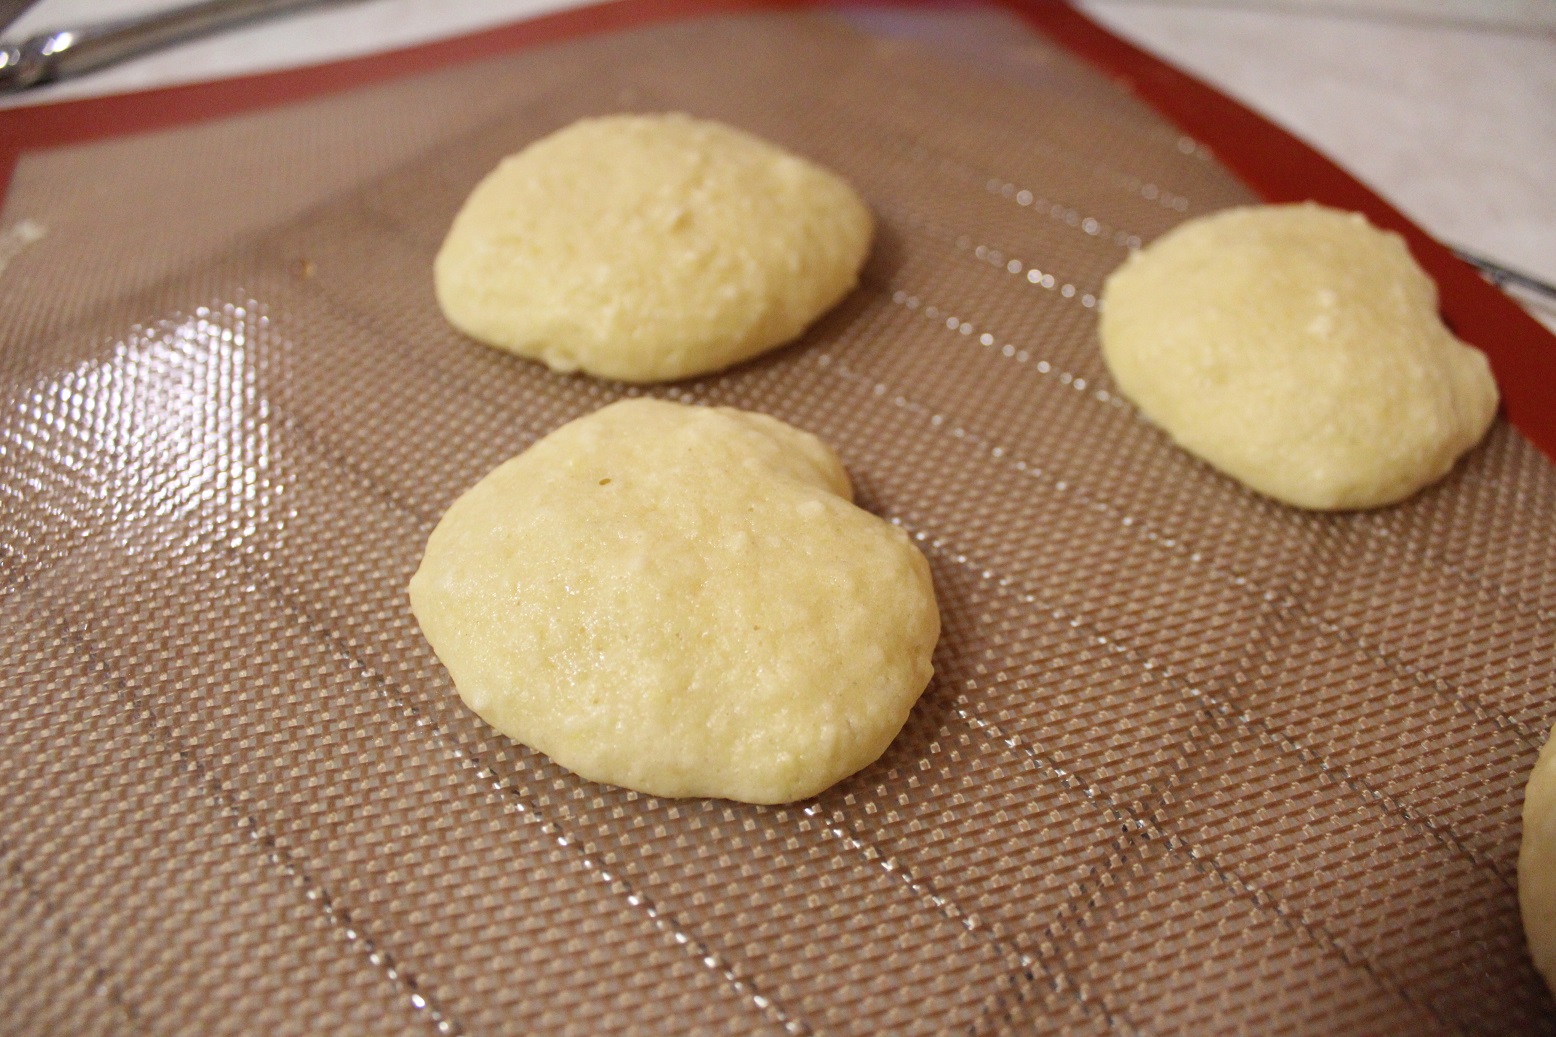 Pattern Cookies